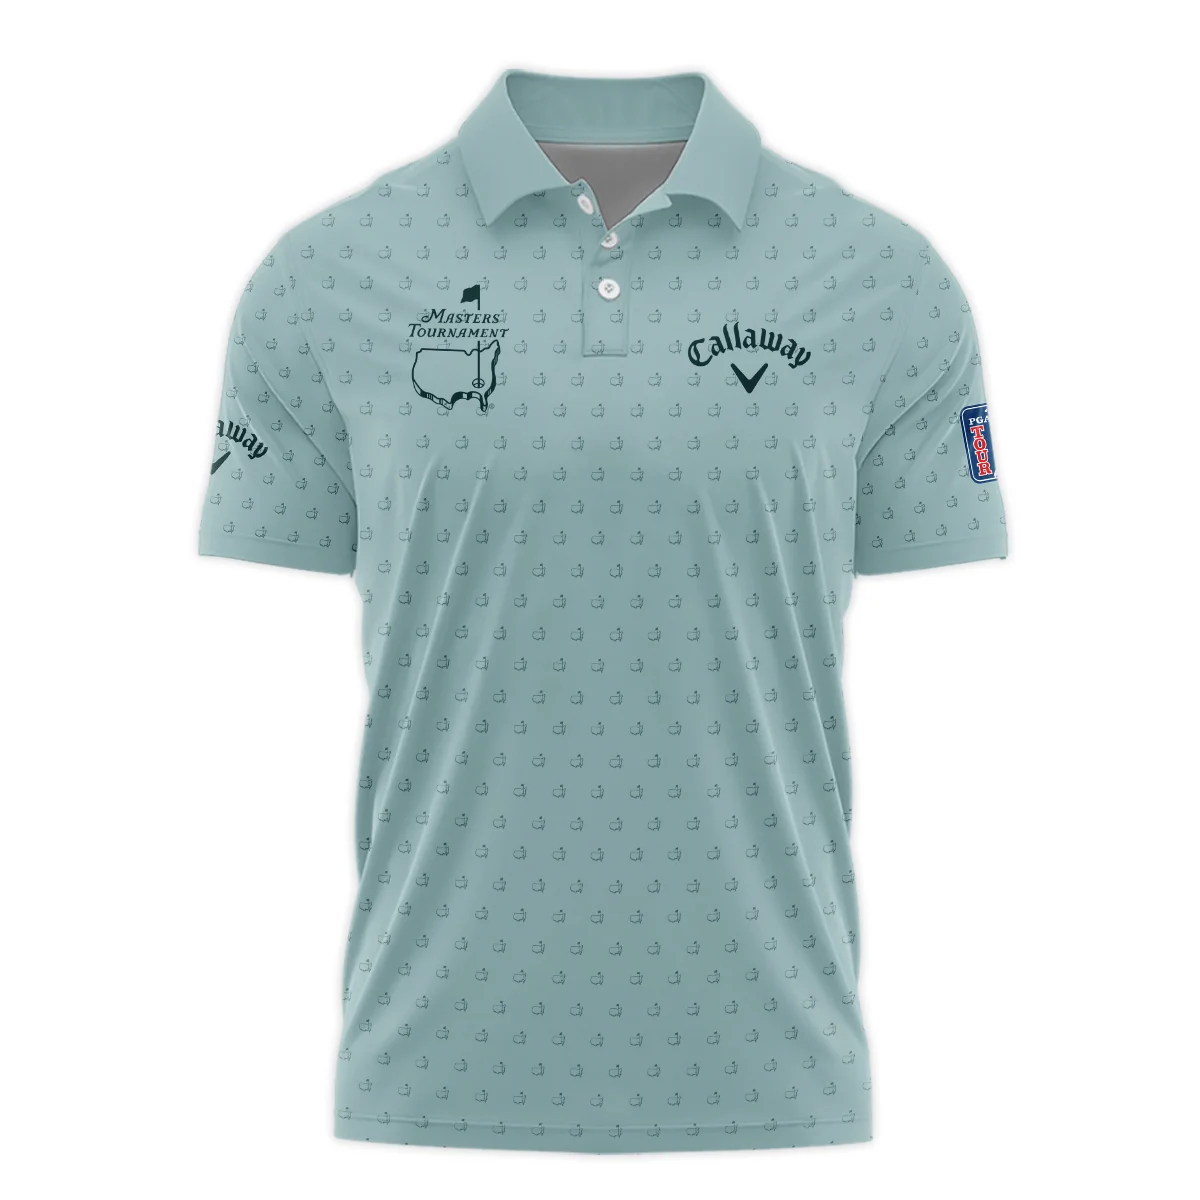 Golf Pattern Masters Tournament Callaway Zipper Polo Shirt Cyan Pattern All Over Print Zipper Polo Shirt For Men